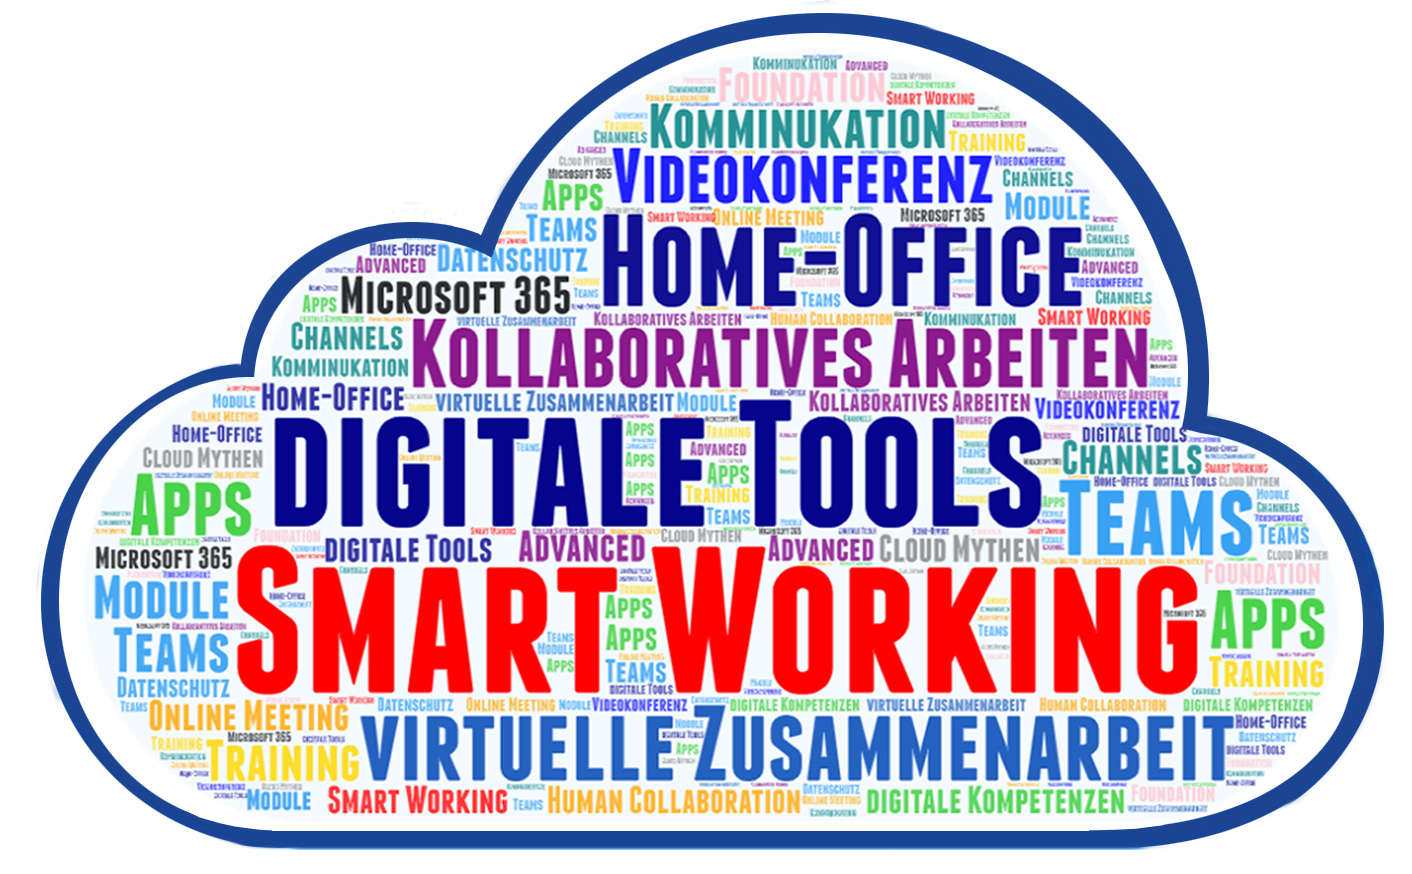 Kollaboration in der digitalen Arbeitswelt. (Collage: Urs Spätig / ETH, ID)